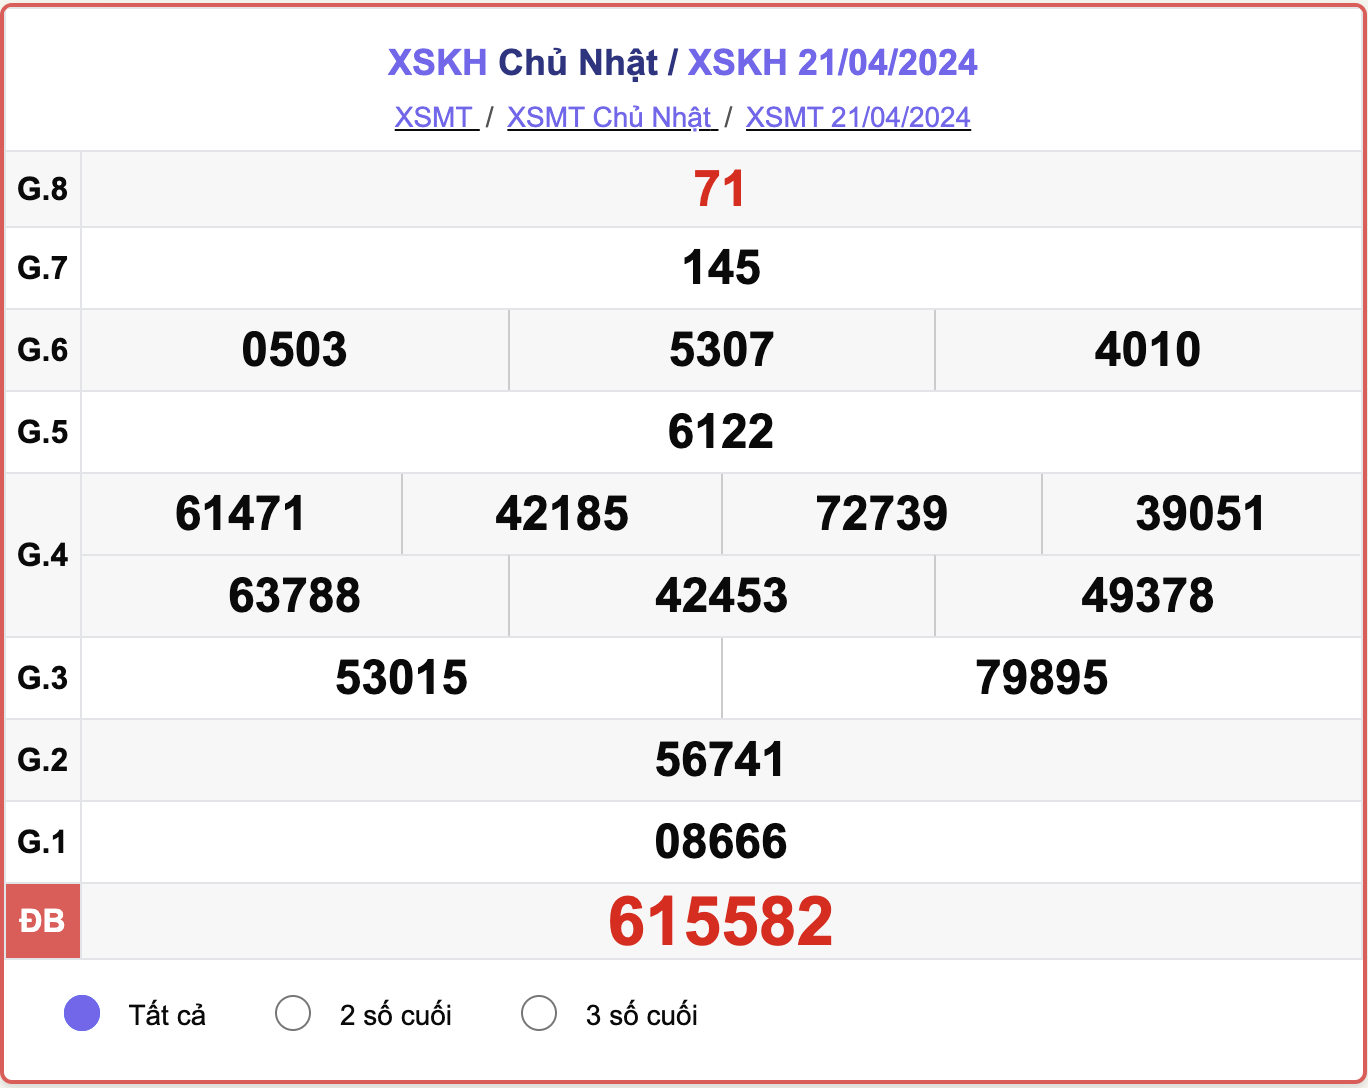 XSKH Chủ nhật, kết quả xổ số Khánh Hòa ngày 21/4/2024.